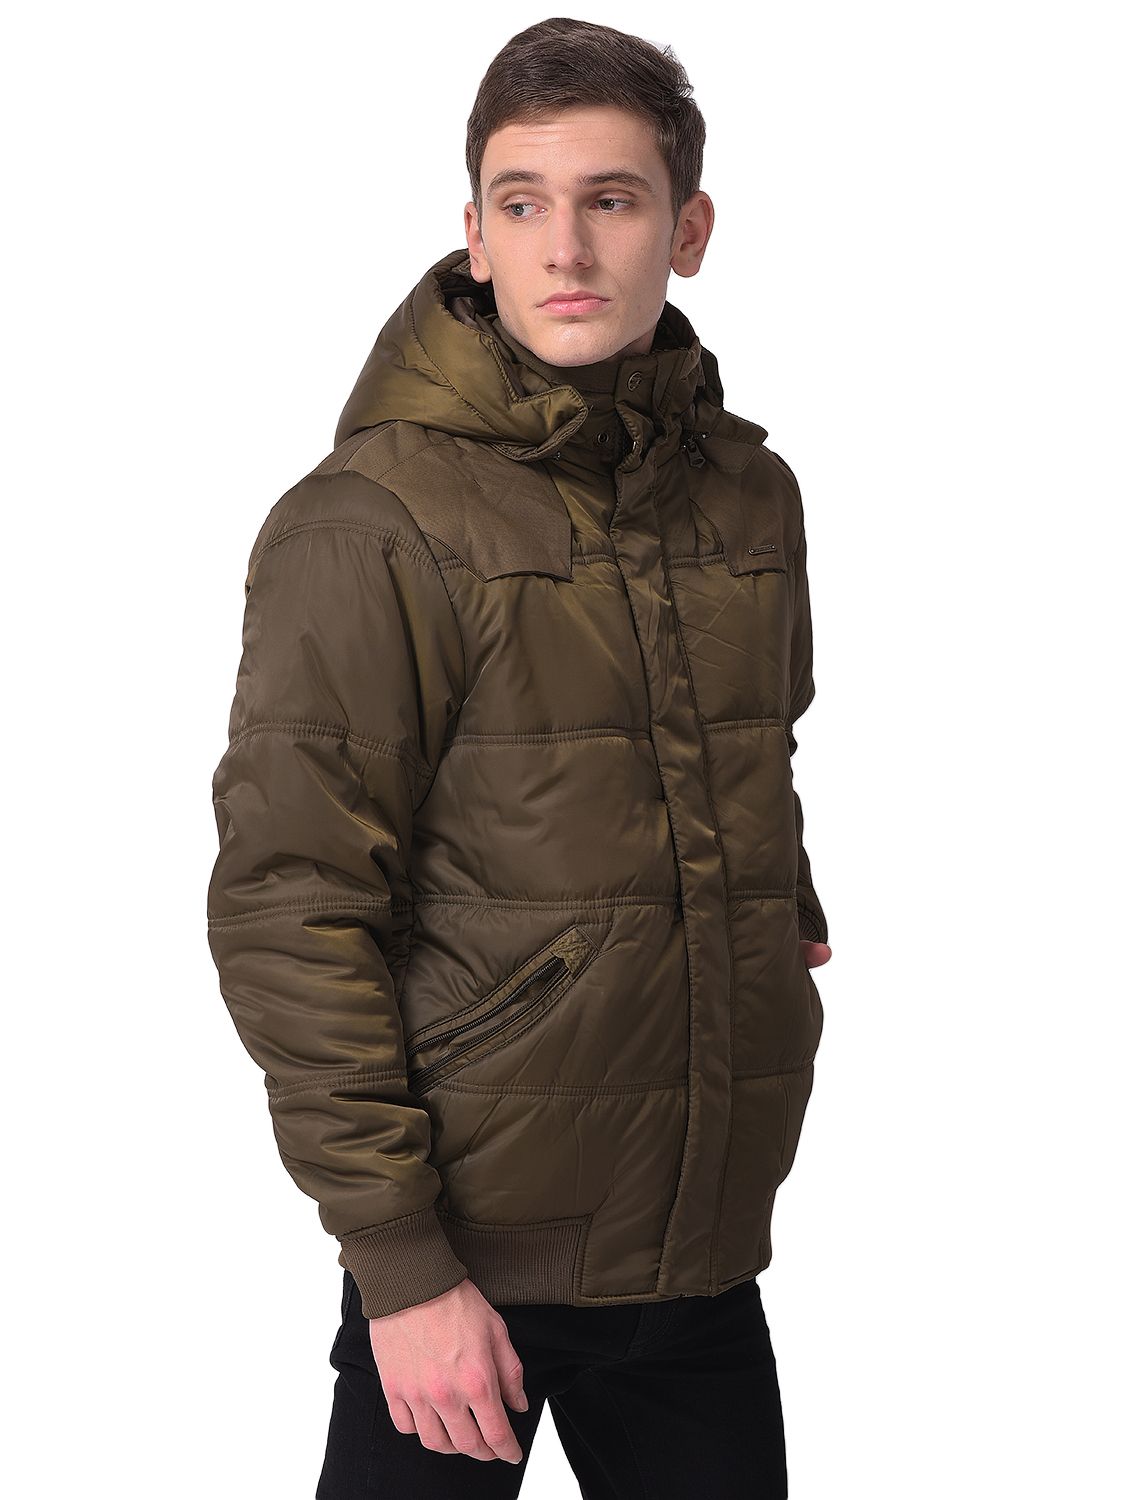 2PCS Outdoor Winter Hunting Mens Jacket Coat +pants Waterproof Coat Thicken  size | eBay